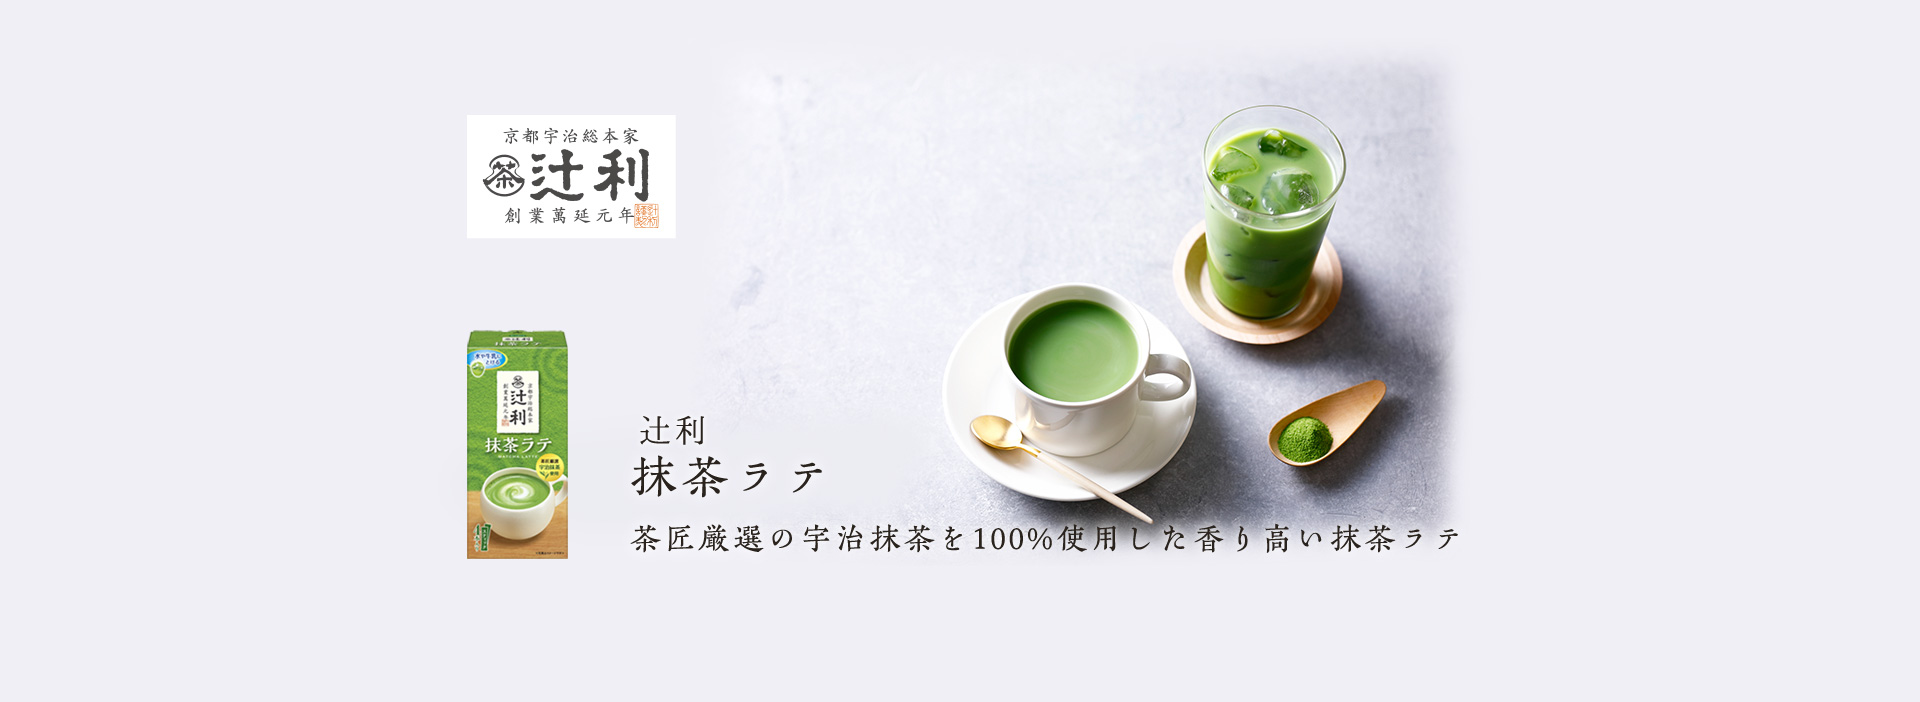 辻利 抹茶ラテ 茶匠厳選の宇治抹茶を100%使用した香り高い抹茶ラテ